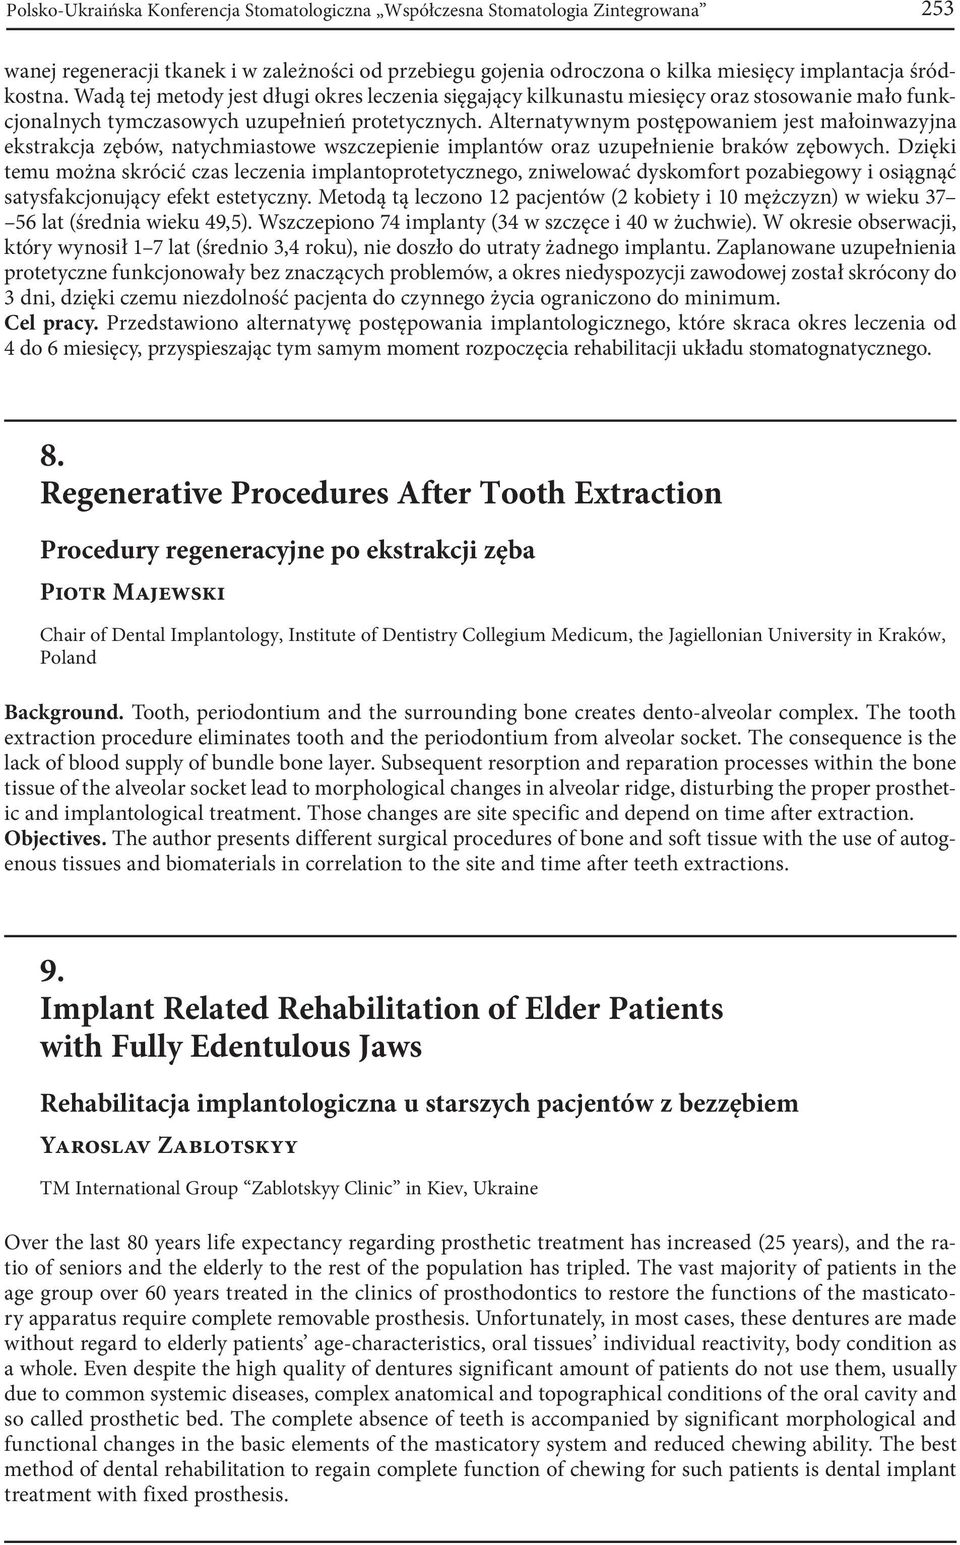 Alternatywnym postępowaniem jest małoinwazyjna ekstrakcja zębów, natychmiastowe wszczepienie implantów oraz uzupełnienie braków zębowych.